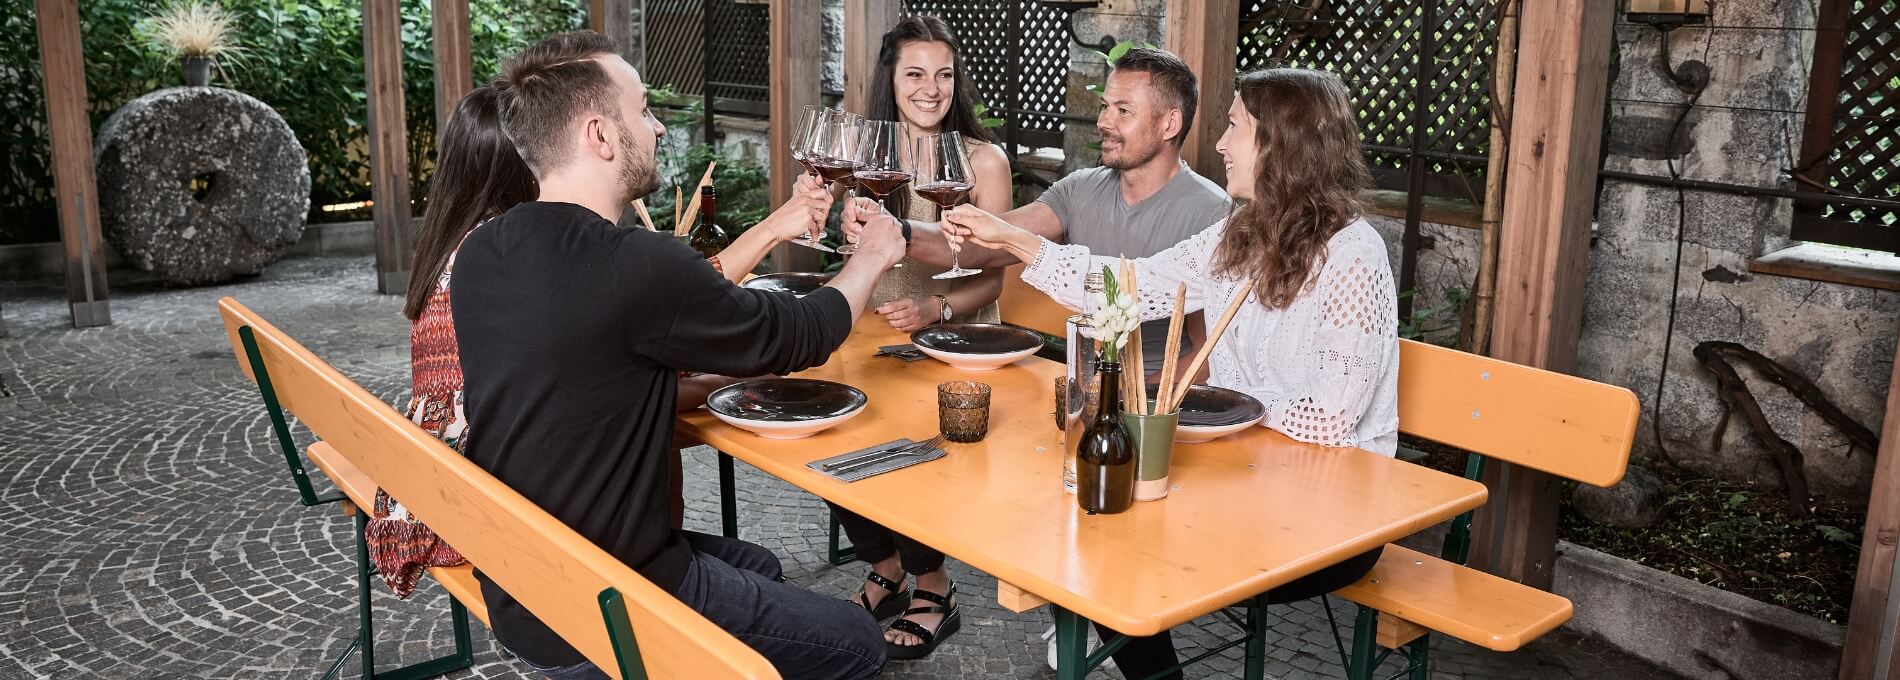 Fünf Personen sitzen im Außenbereich eines Restaurants auf einer breiten Bierzeltgarnitur mit Lehne und stoßen mit Rotwein an.